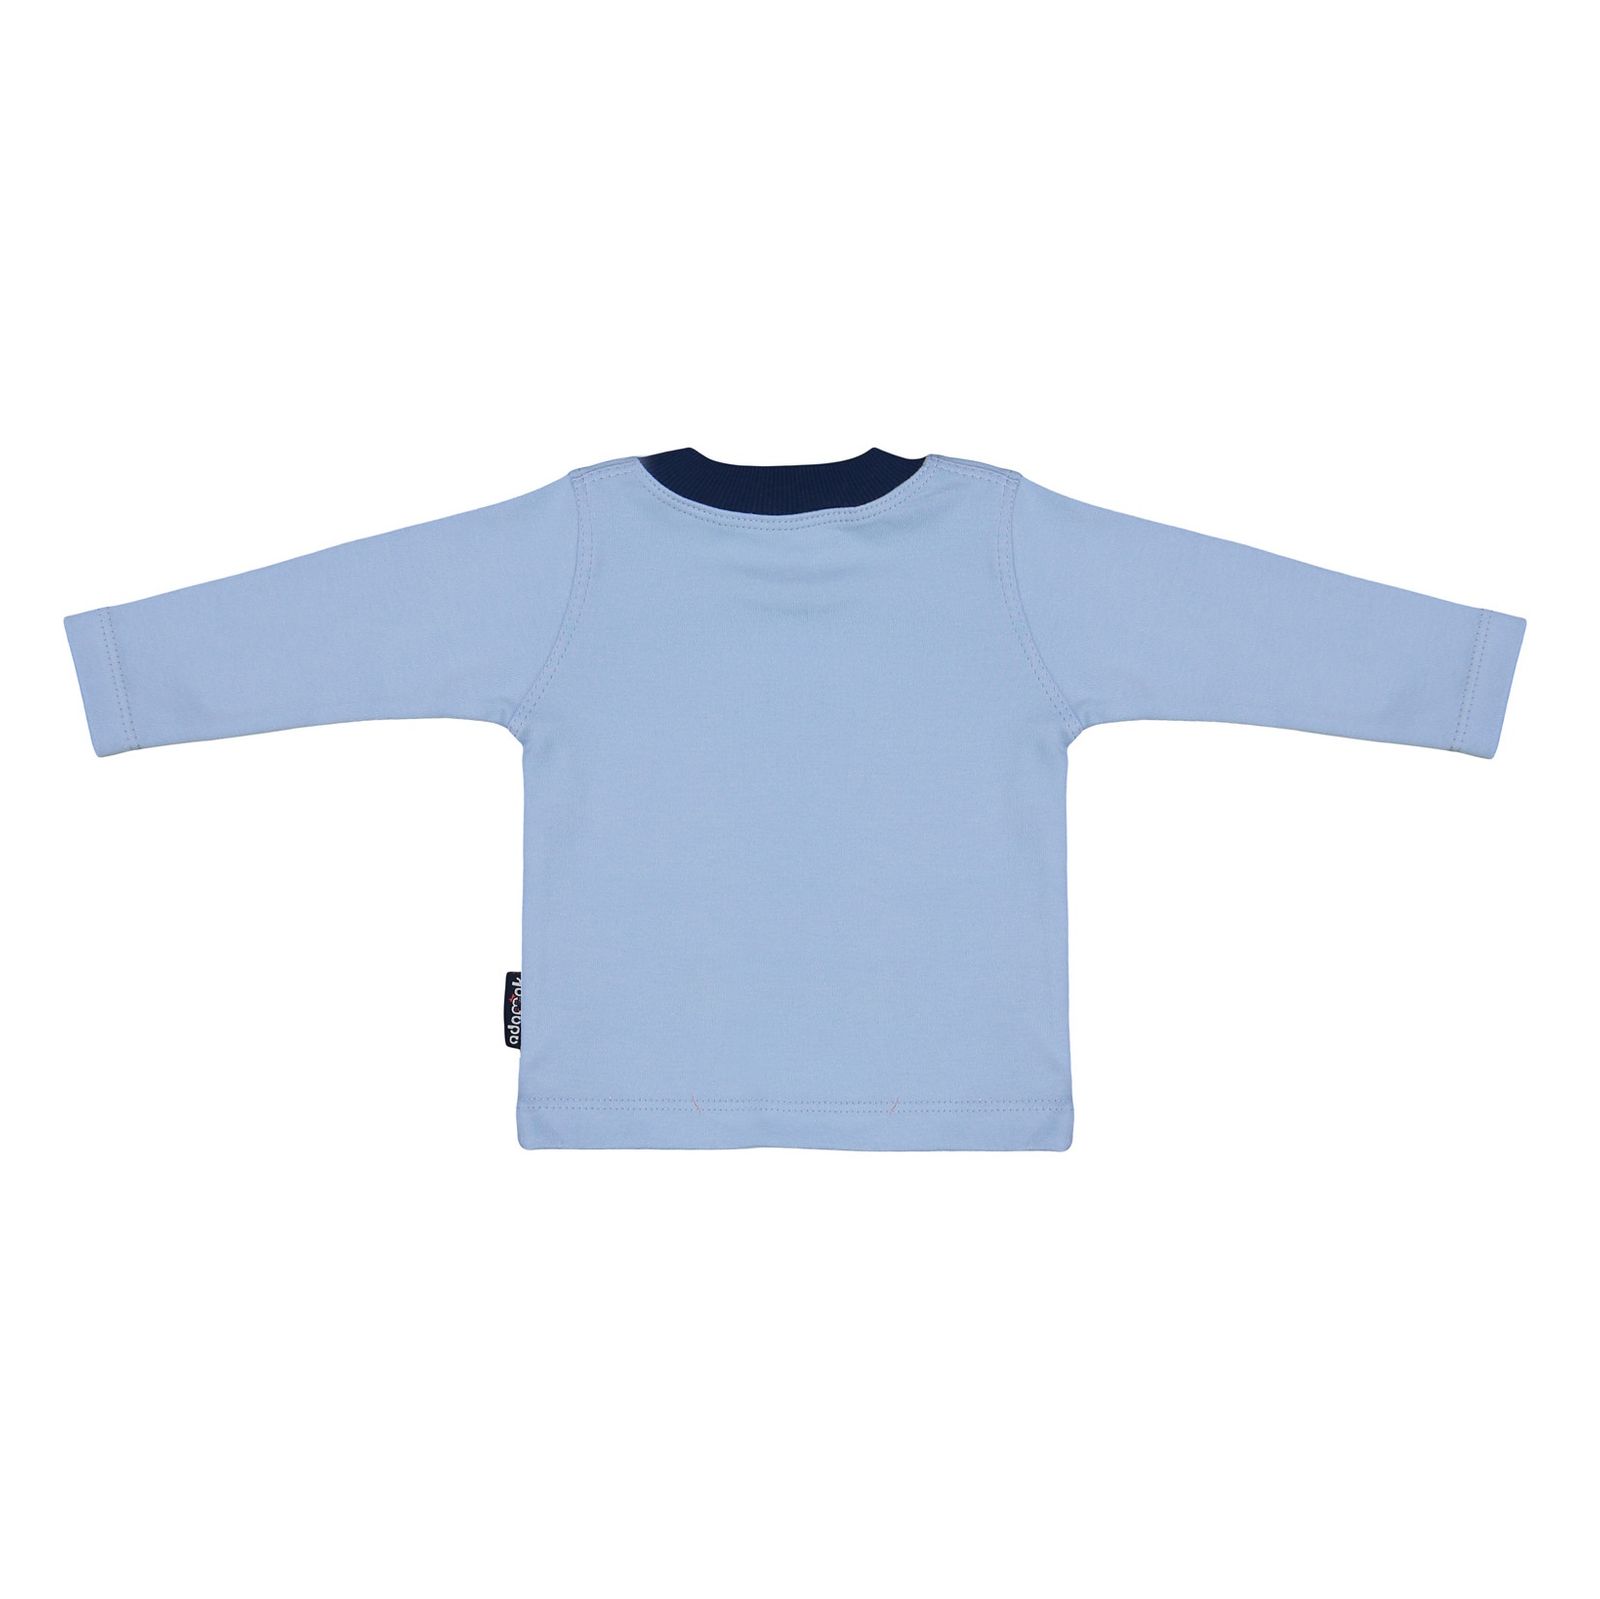 ست تی شرت و شلوار نوزادی پسرانه آدمک مدل 2171100-50 - آبی روشن - 4